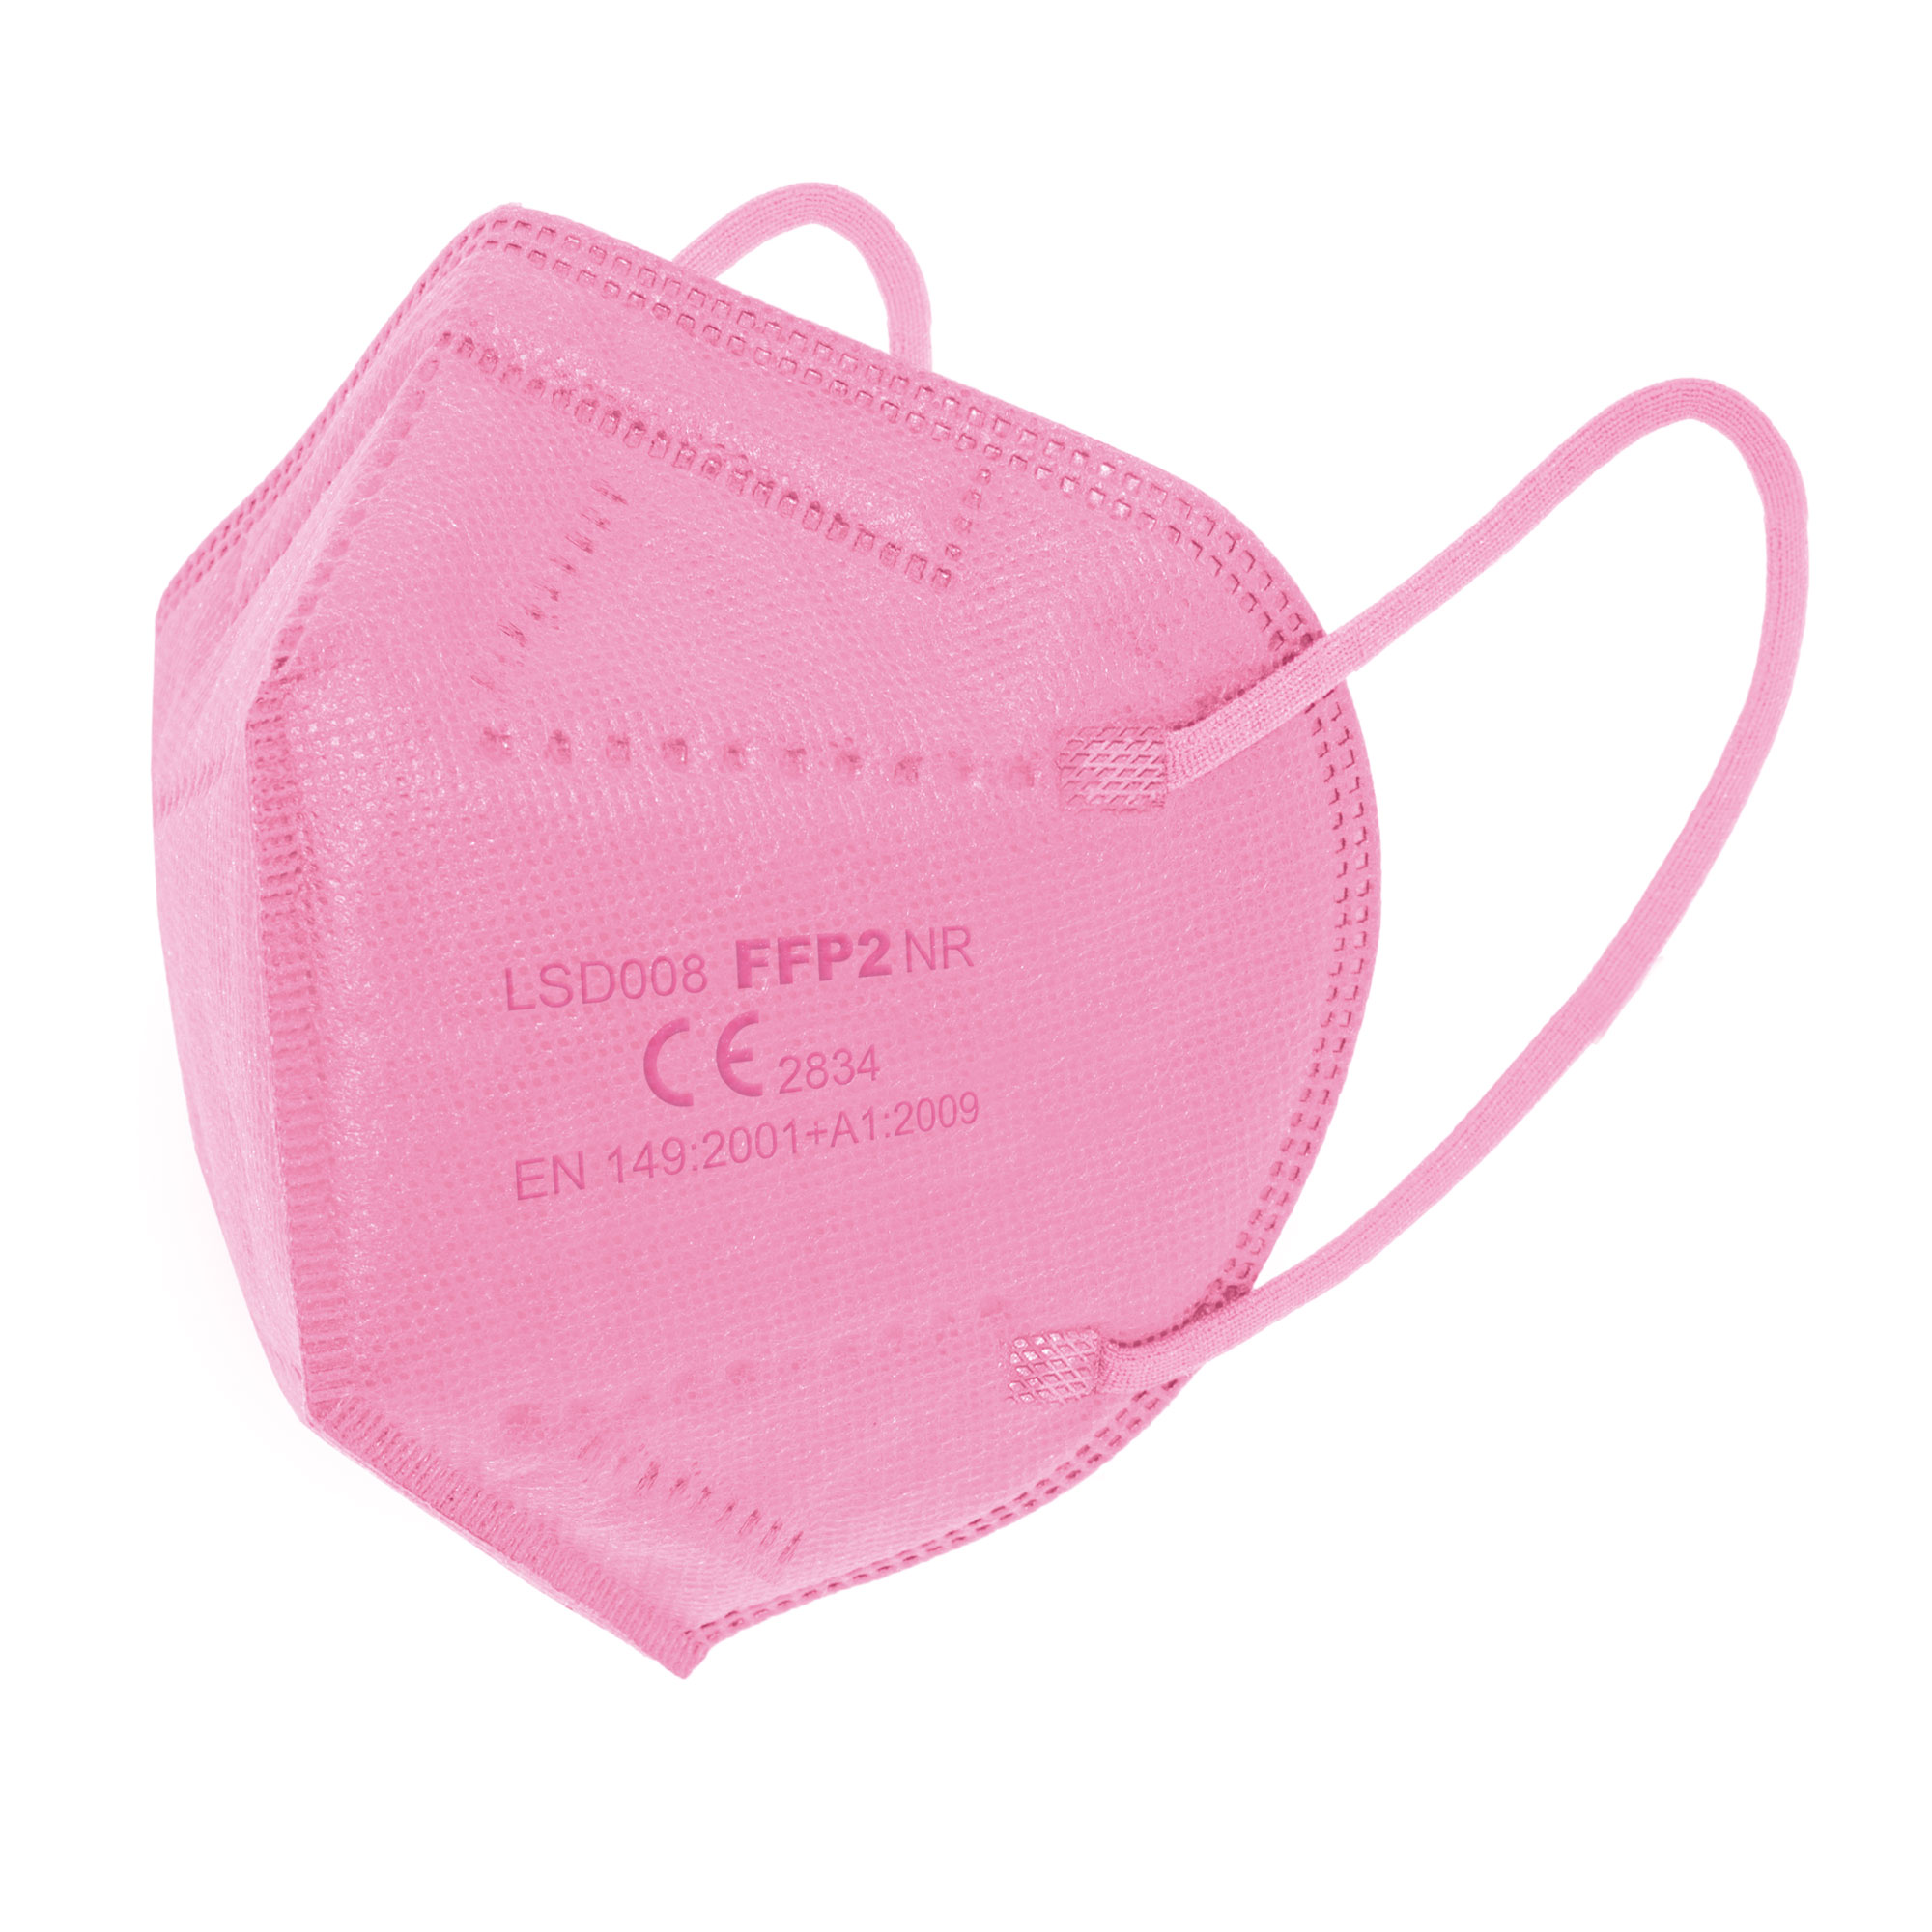 CN CLUB einzeln Pack) FFP2-Maske NAUTICO Atemschutzmaske PINK - verpackt (25er